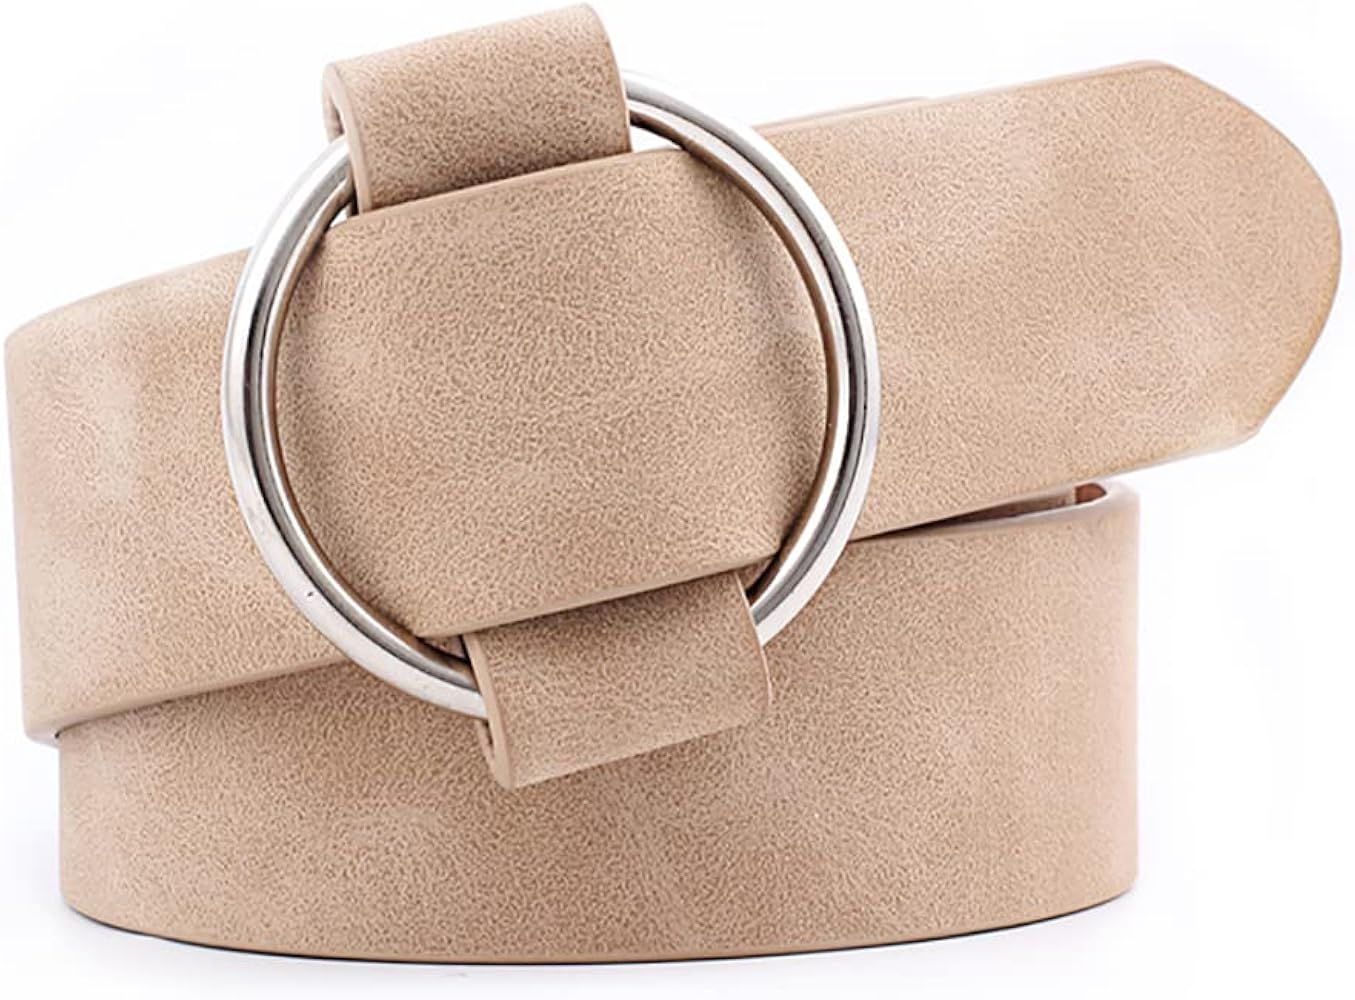 XZQTIVE Women Leather Belt No Pin Circle Buckle Fashion Waist Belt For Jean Dress | Amazon (US)